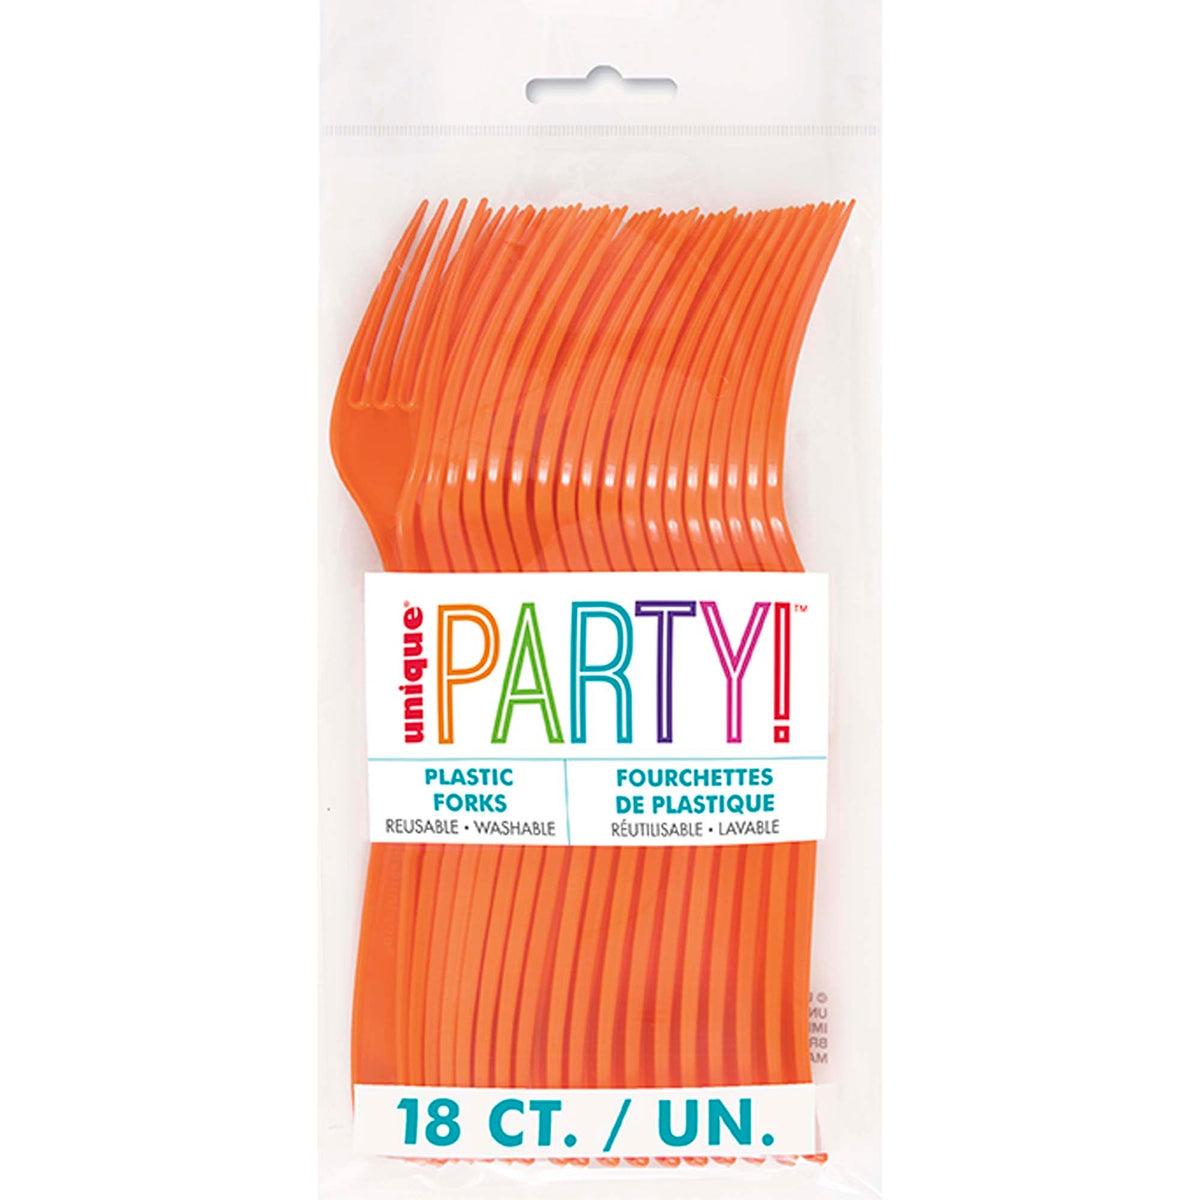 UNIQUE PARTY FAVORS Disposable-Plasticware Pumpkin Orange Plastic Forks, 18 Count